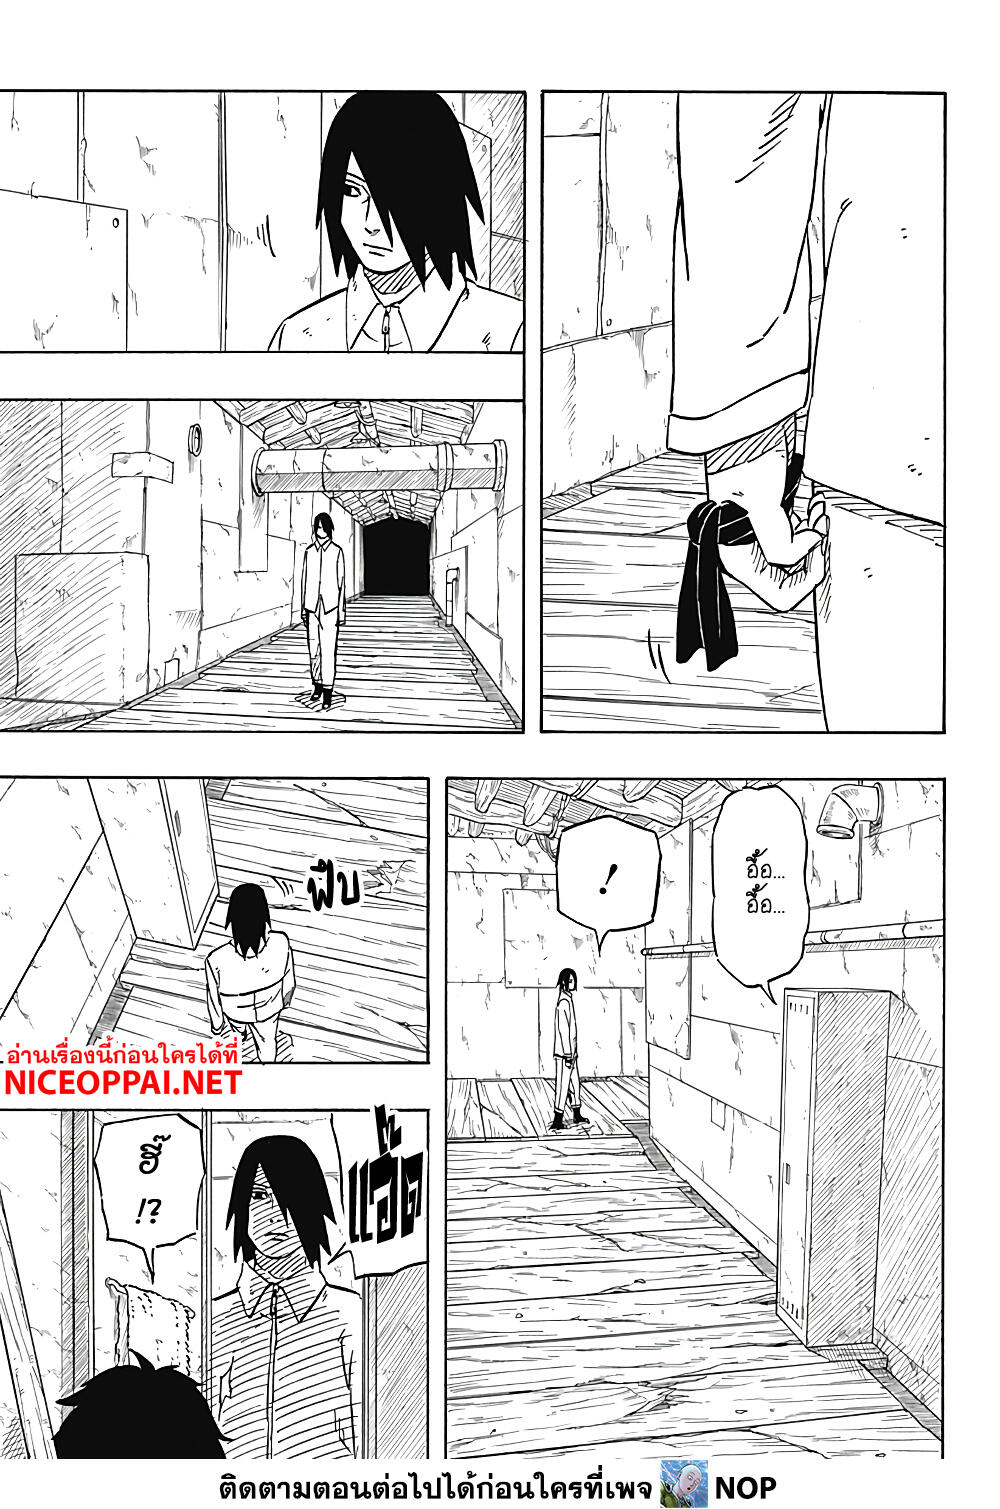 Naruto Sasuke's Story -The Uchiha and the Heavenly Stardust 3-3